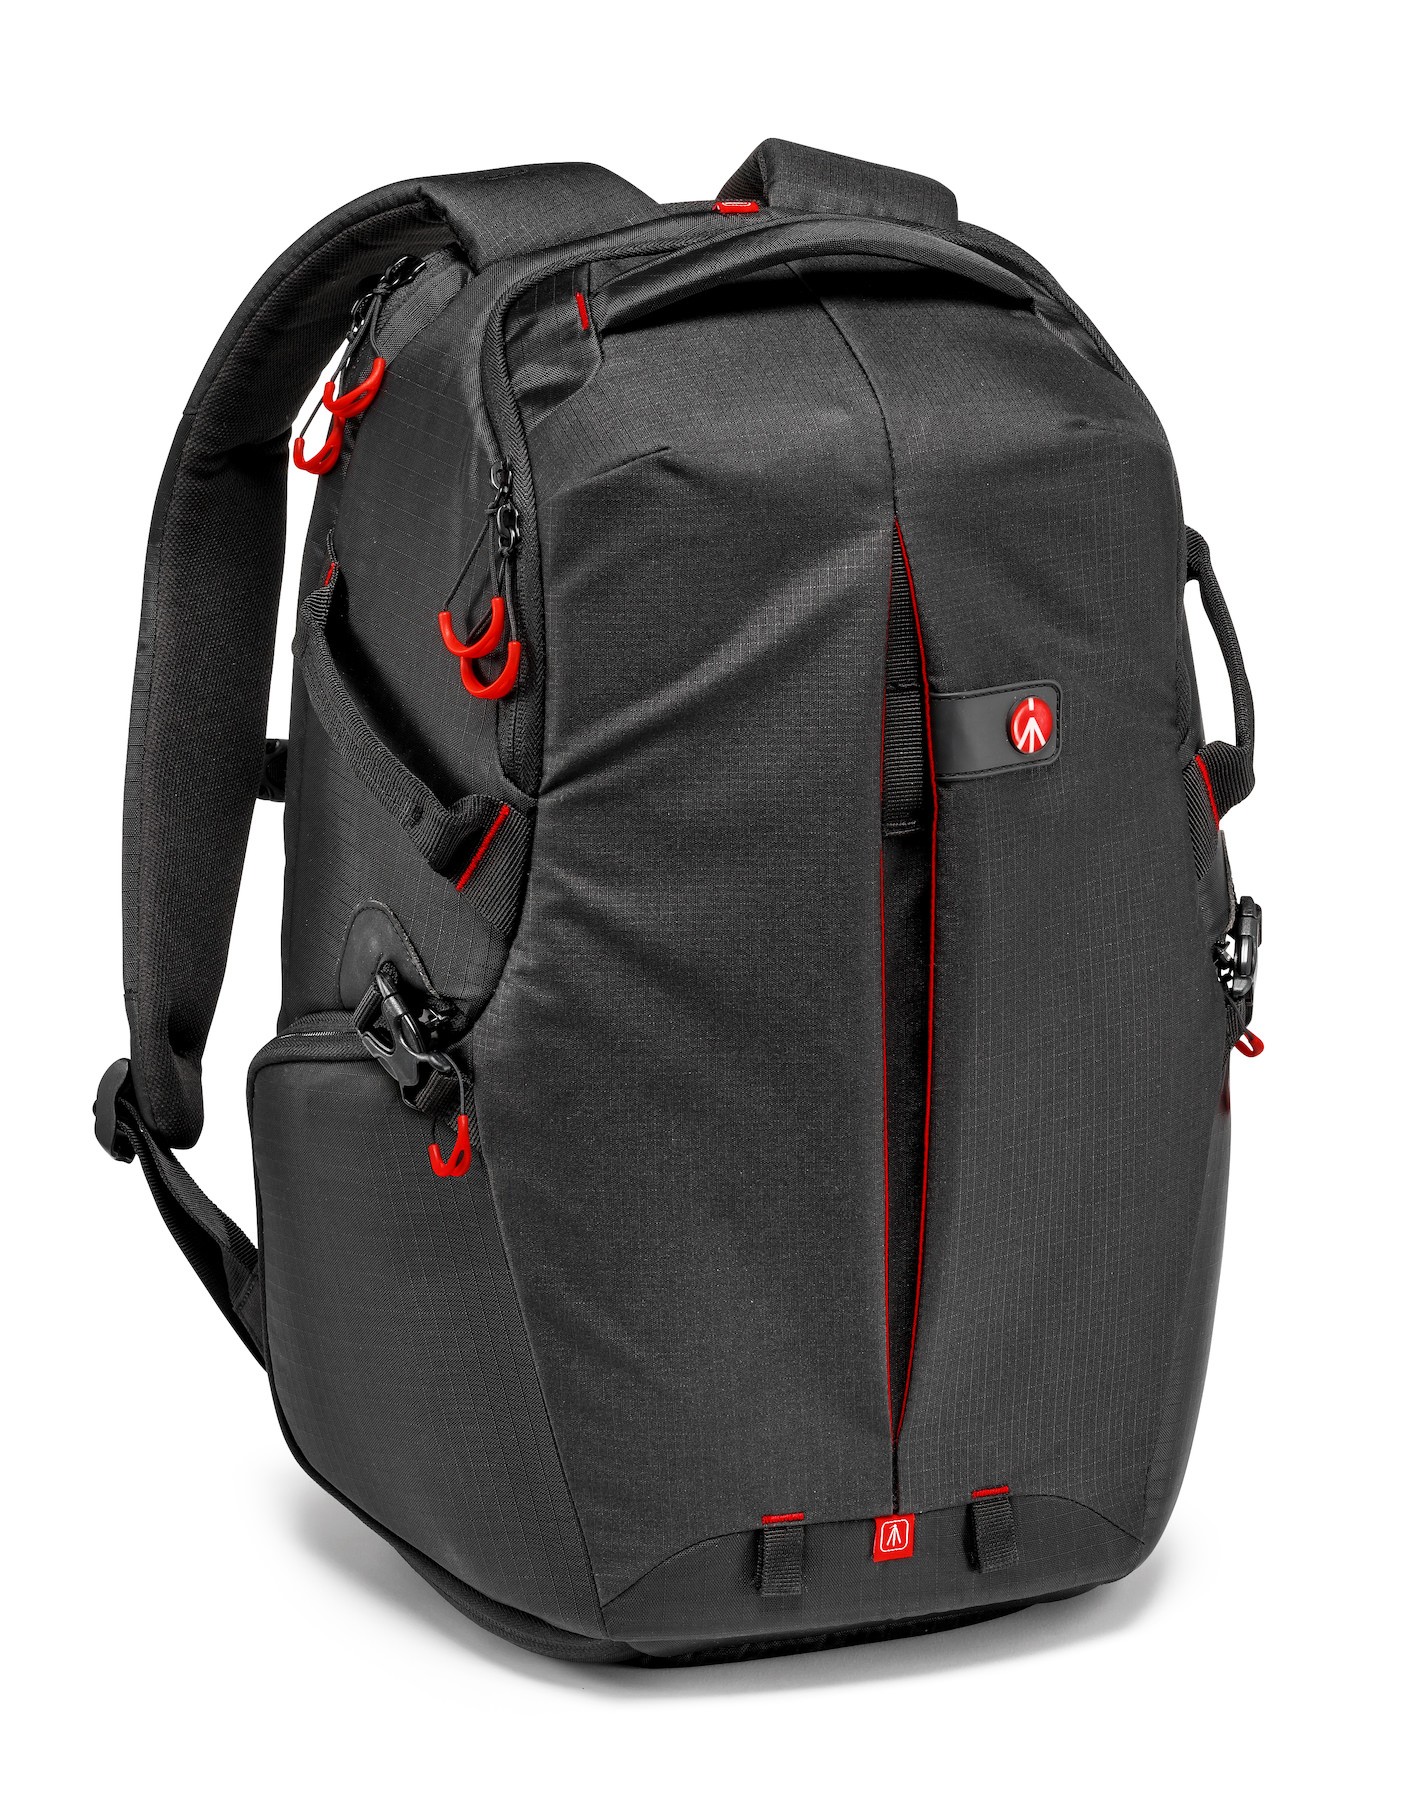 Pro Light camera backpack RedBee-210 for DSLR/camcorder